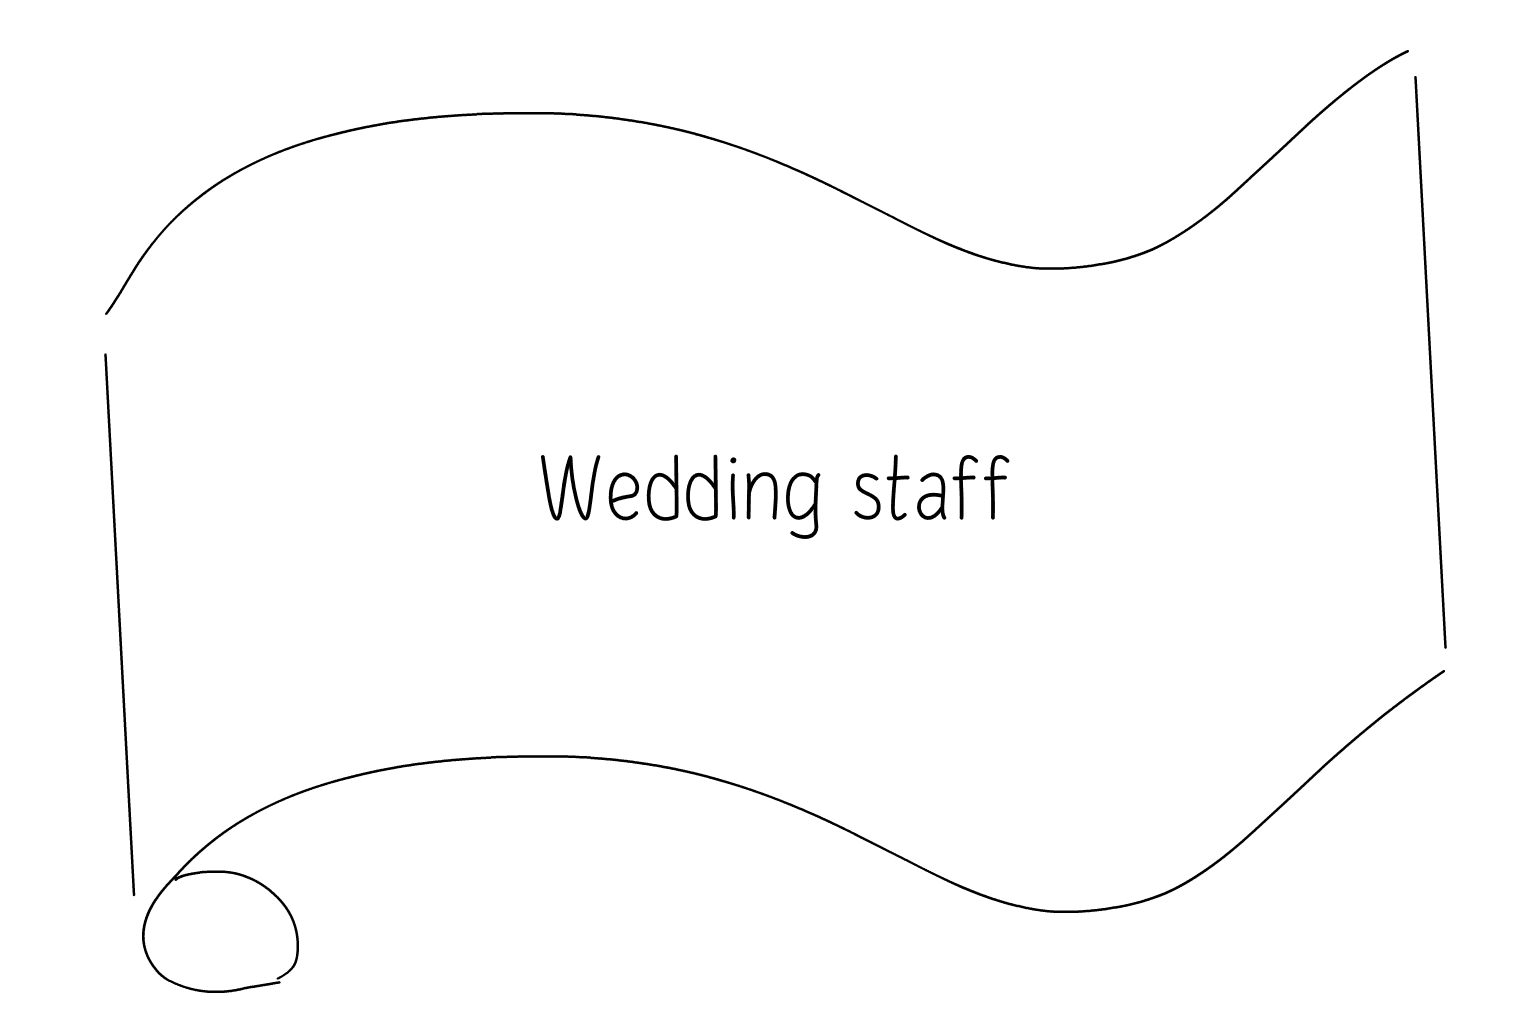 Иллюстрация персонала свадебной службы